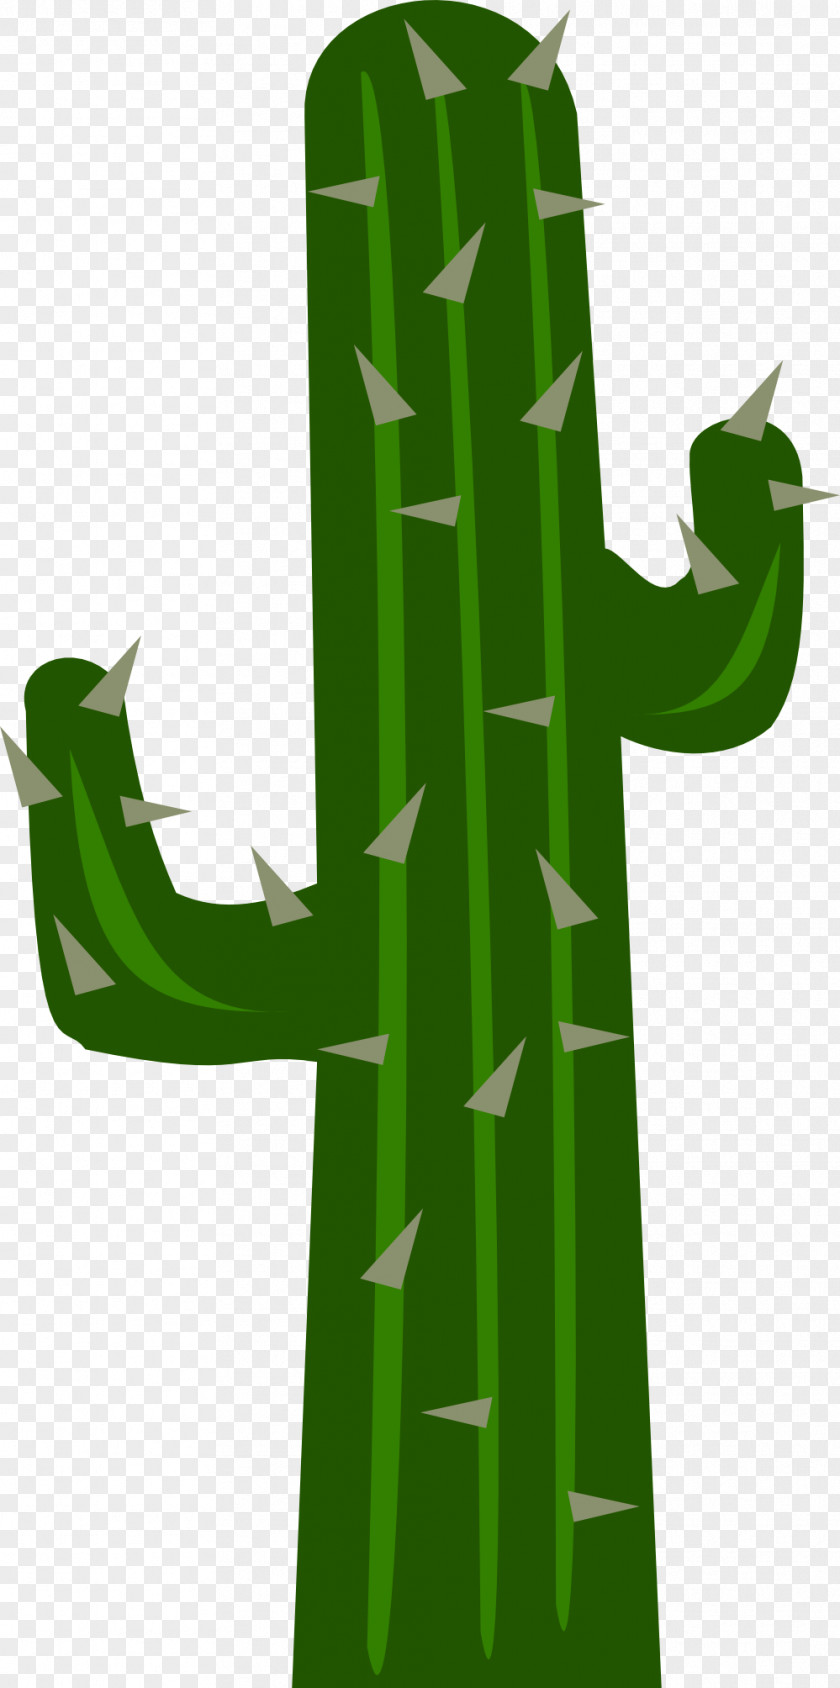 Cactus Images Free Cactaceae Euclidean Vector Clip Art PNG